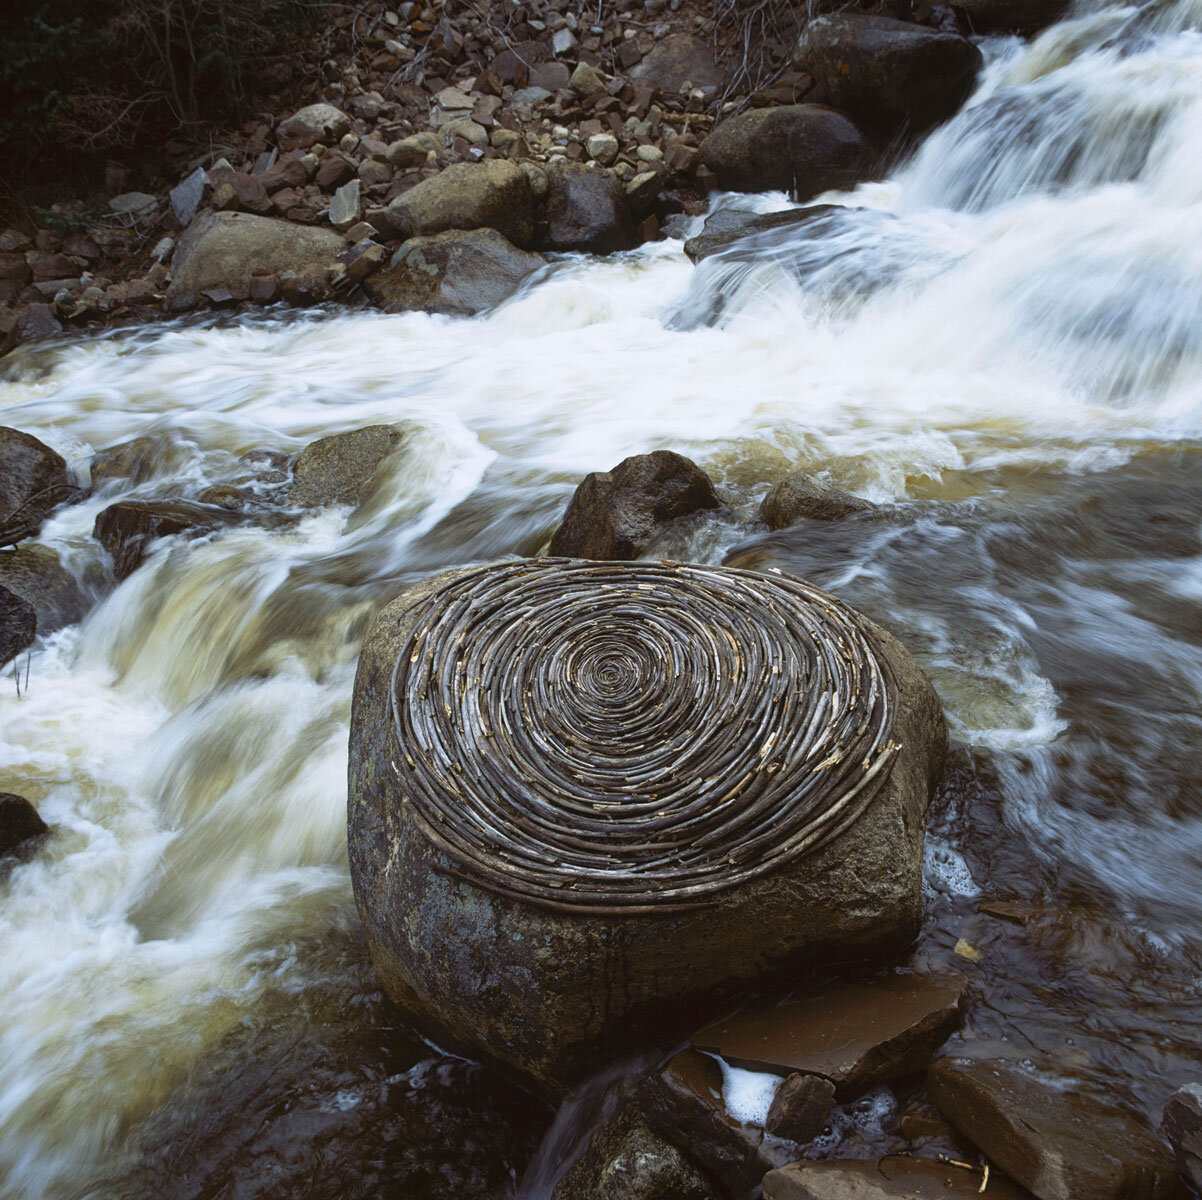 andy-goldsworthy-reworked-sticks-on-river-boulder.jpg